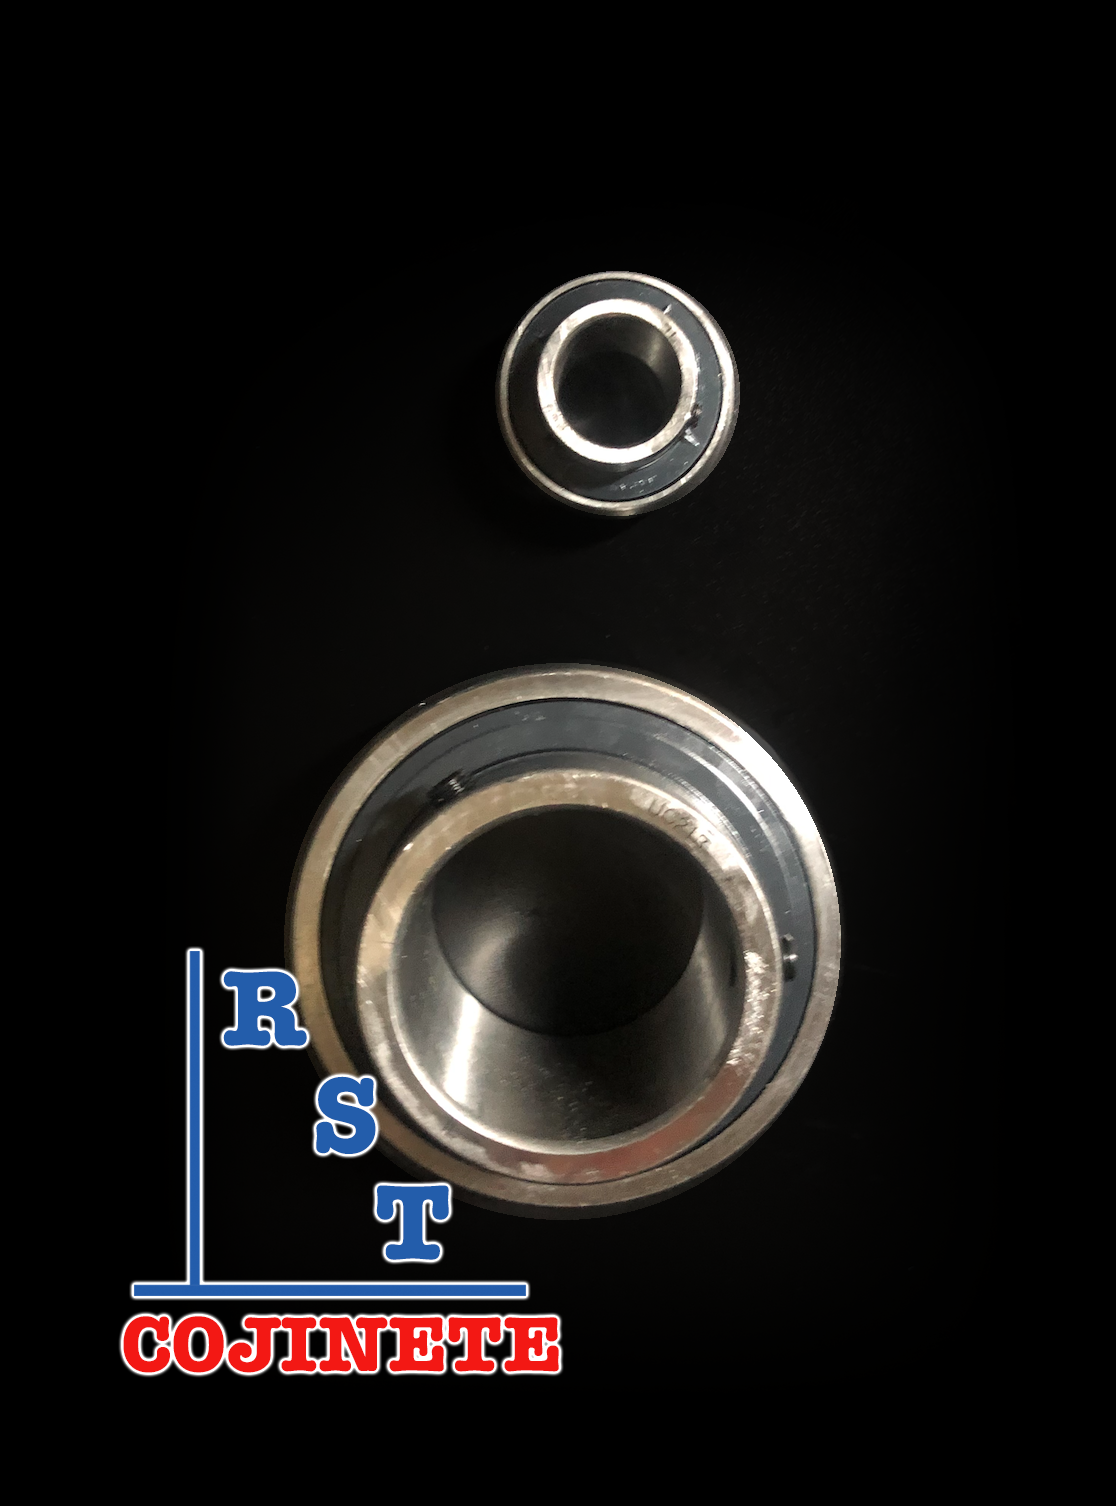 Cojinete insertable UC210-32 | Rodamiento para eje de 2" rígido de bolas con sello de hule para chumacera